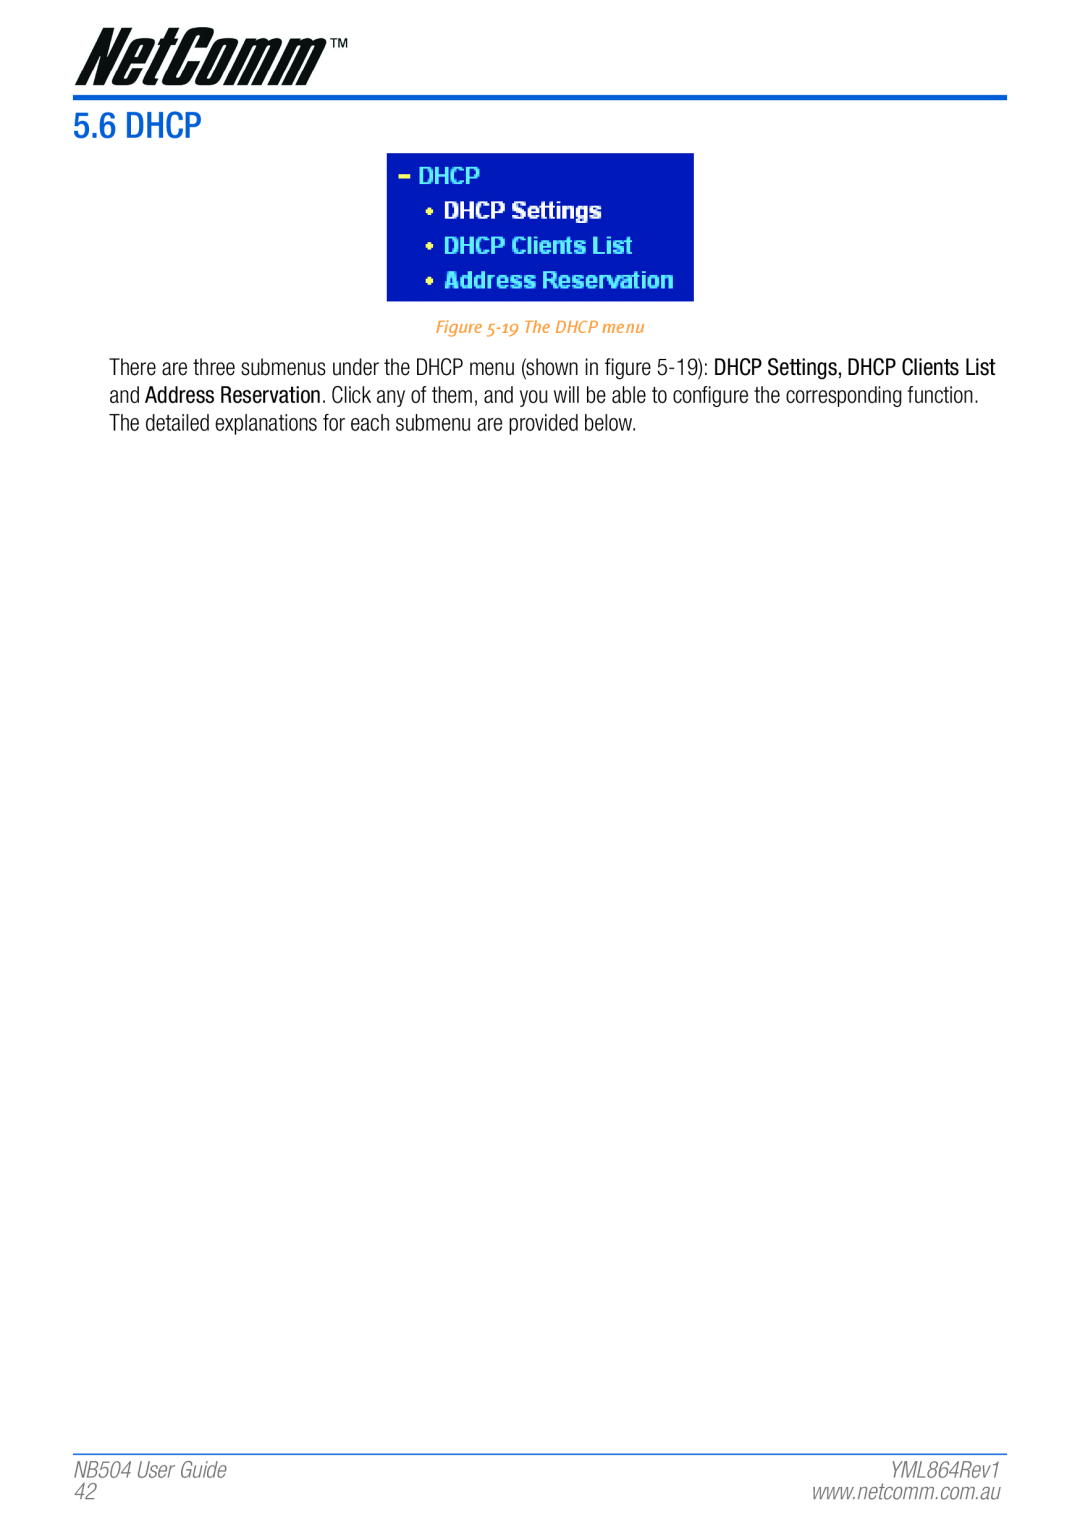 NetComm manual Dhcp, NB504 User Guide, 19 The DHCP menu, YML864Rev1 